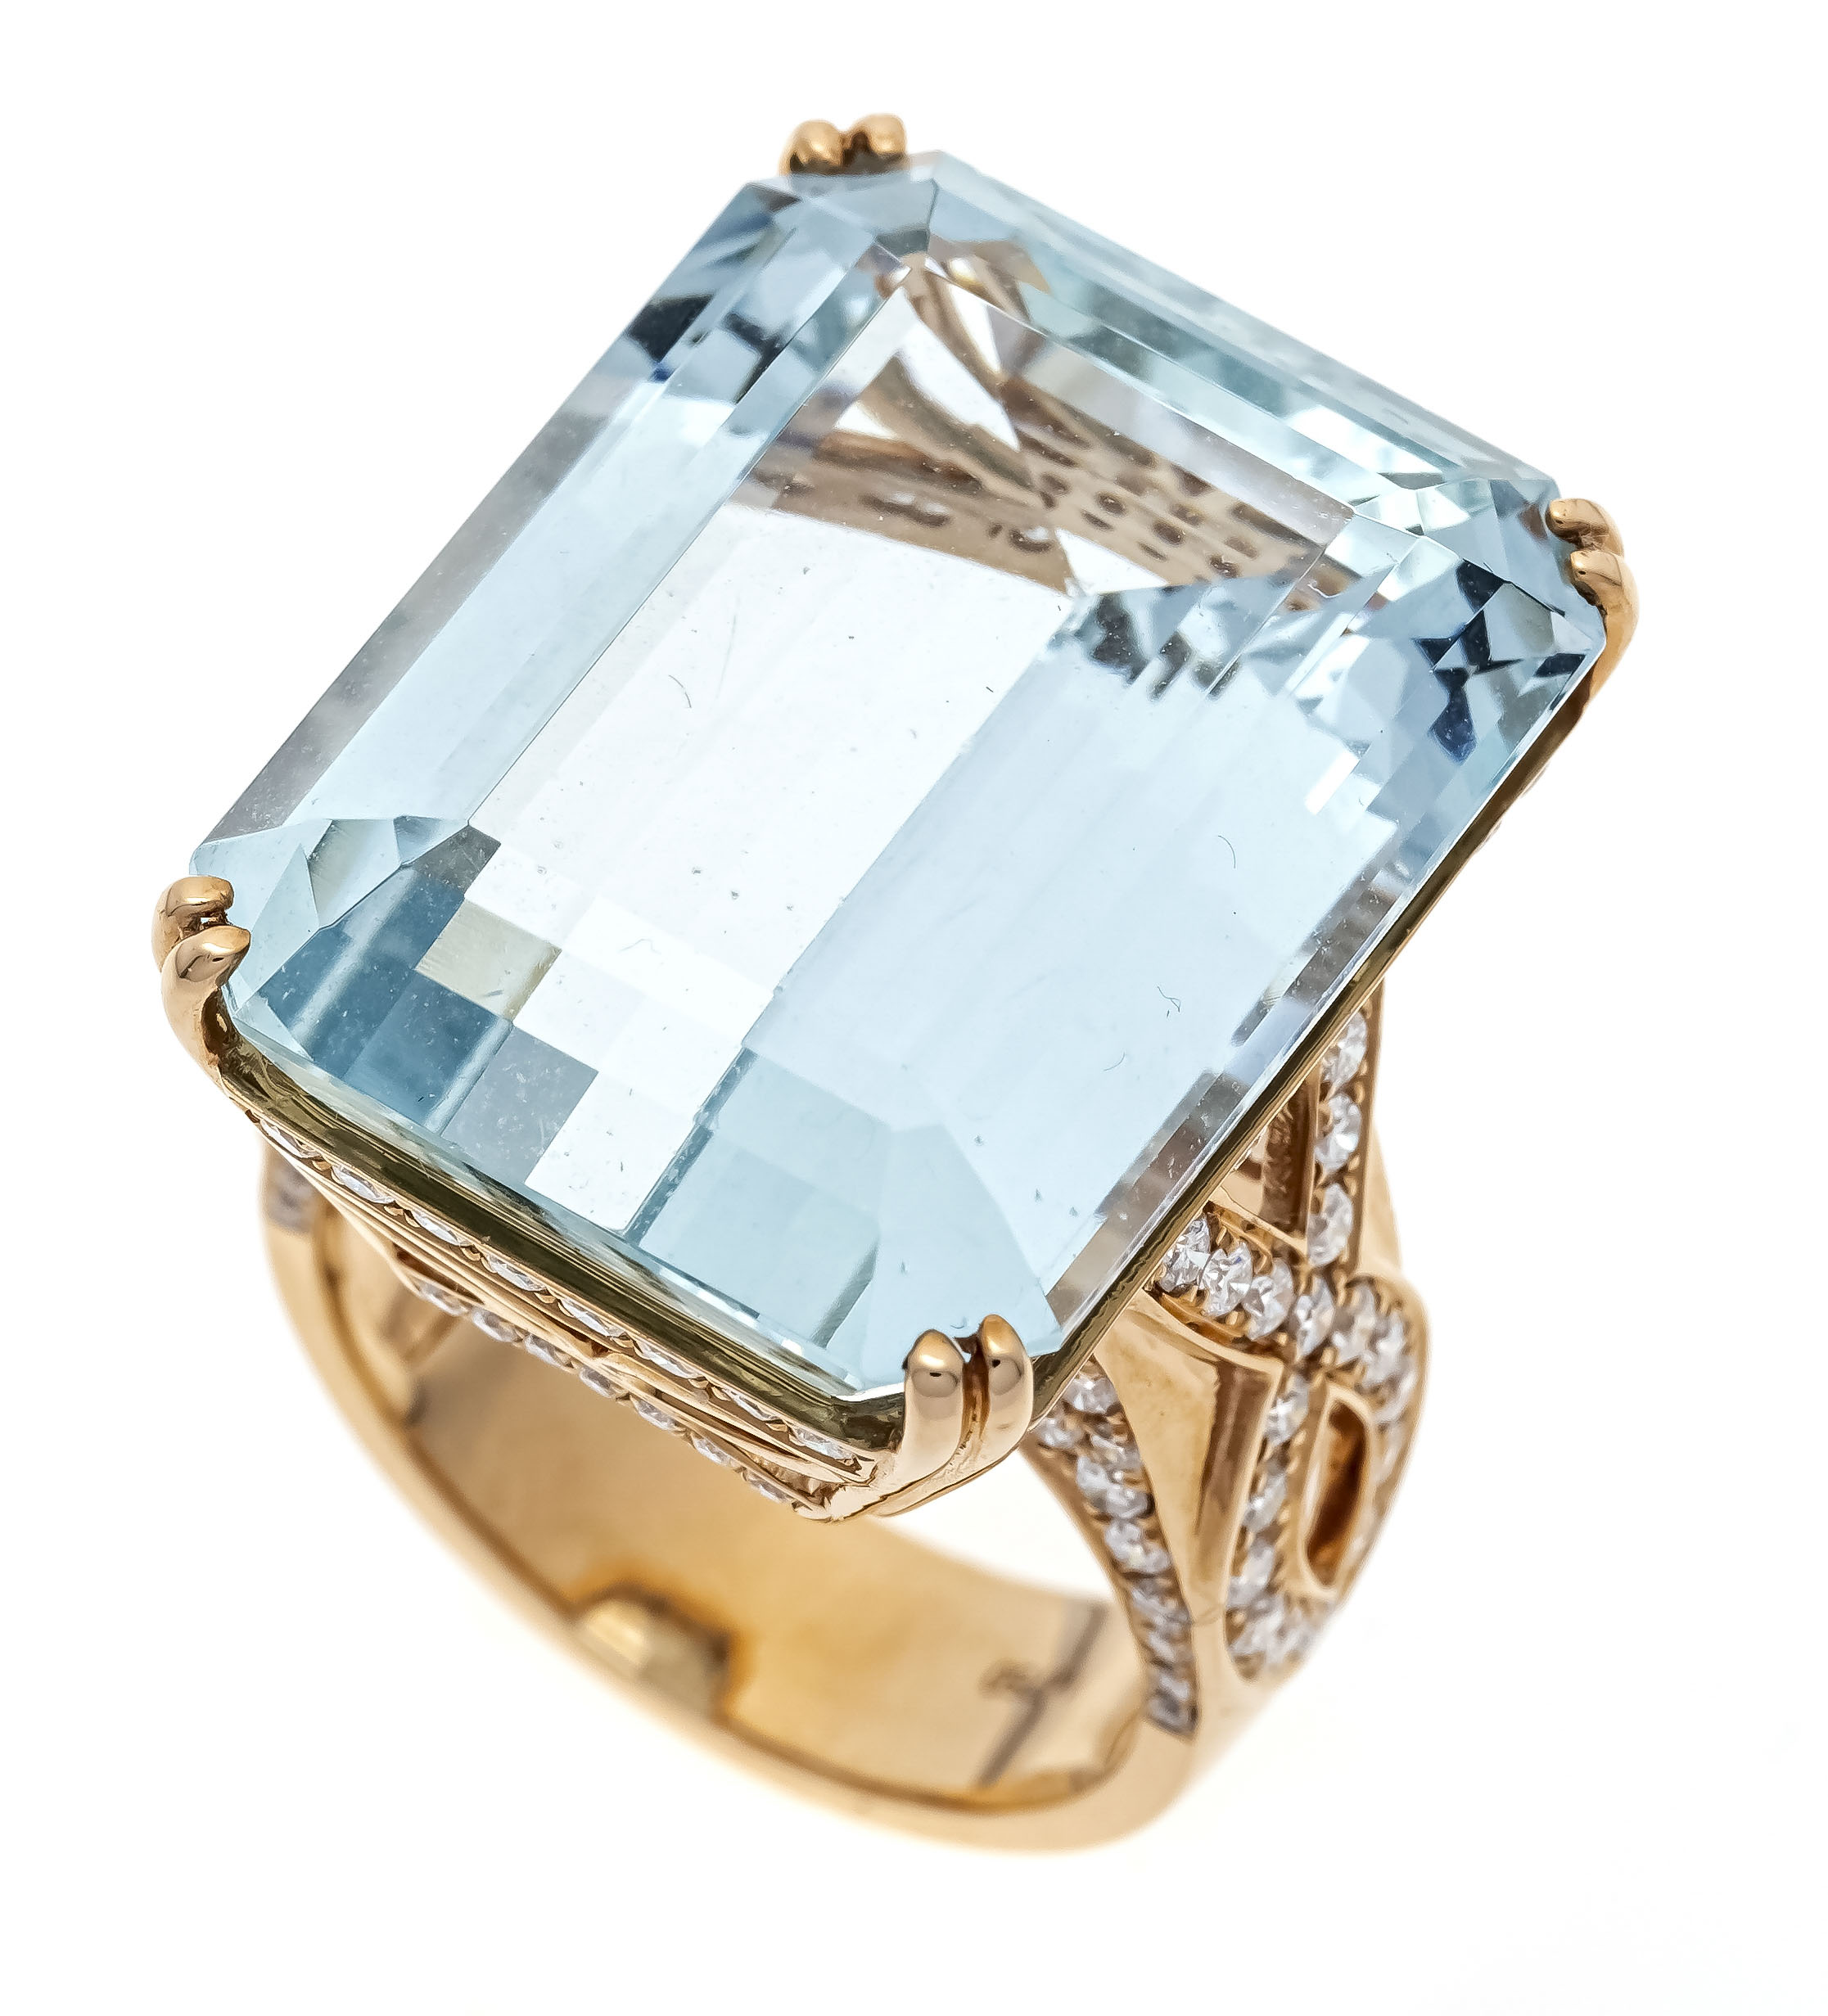 Aquamarine-brilliant ring RG 750/000 with an emerald-cut excellent aquamarine 31.15 ct in very